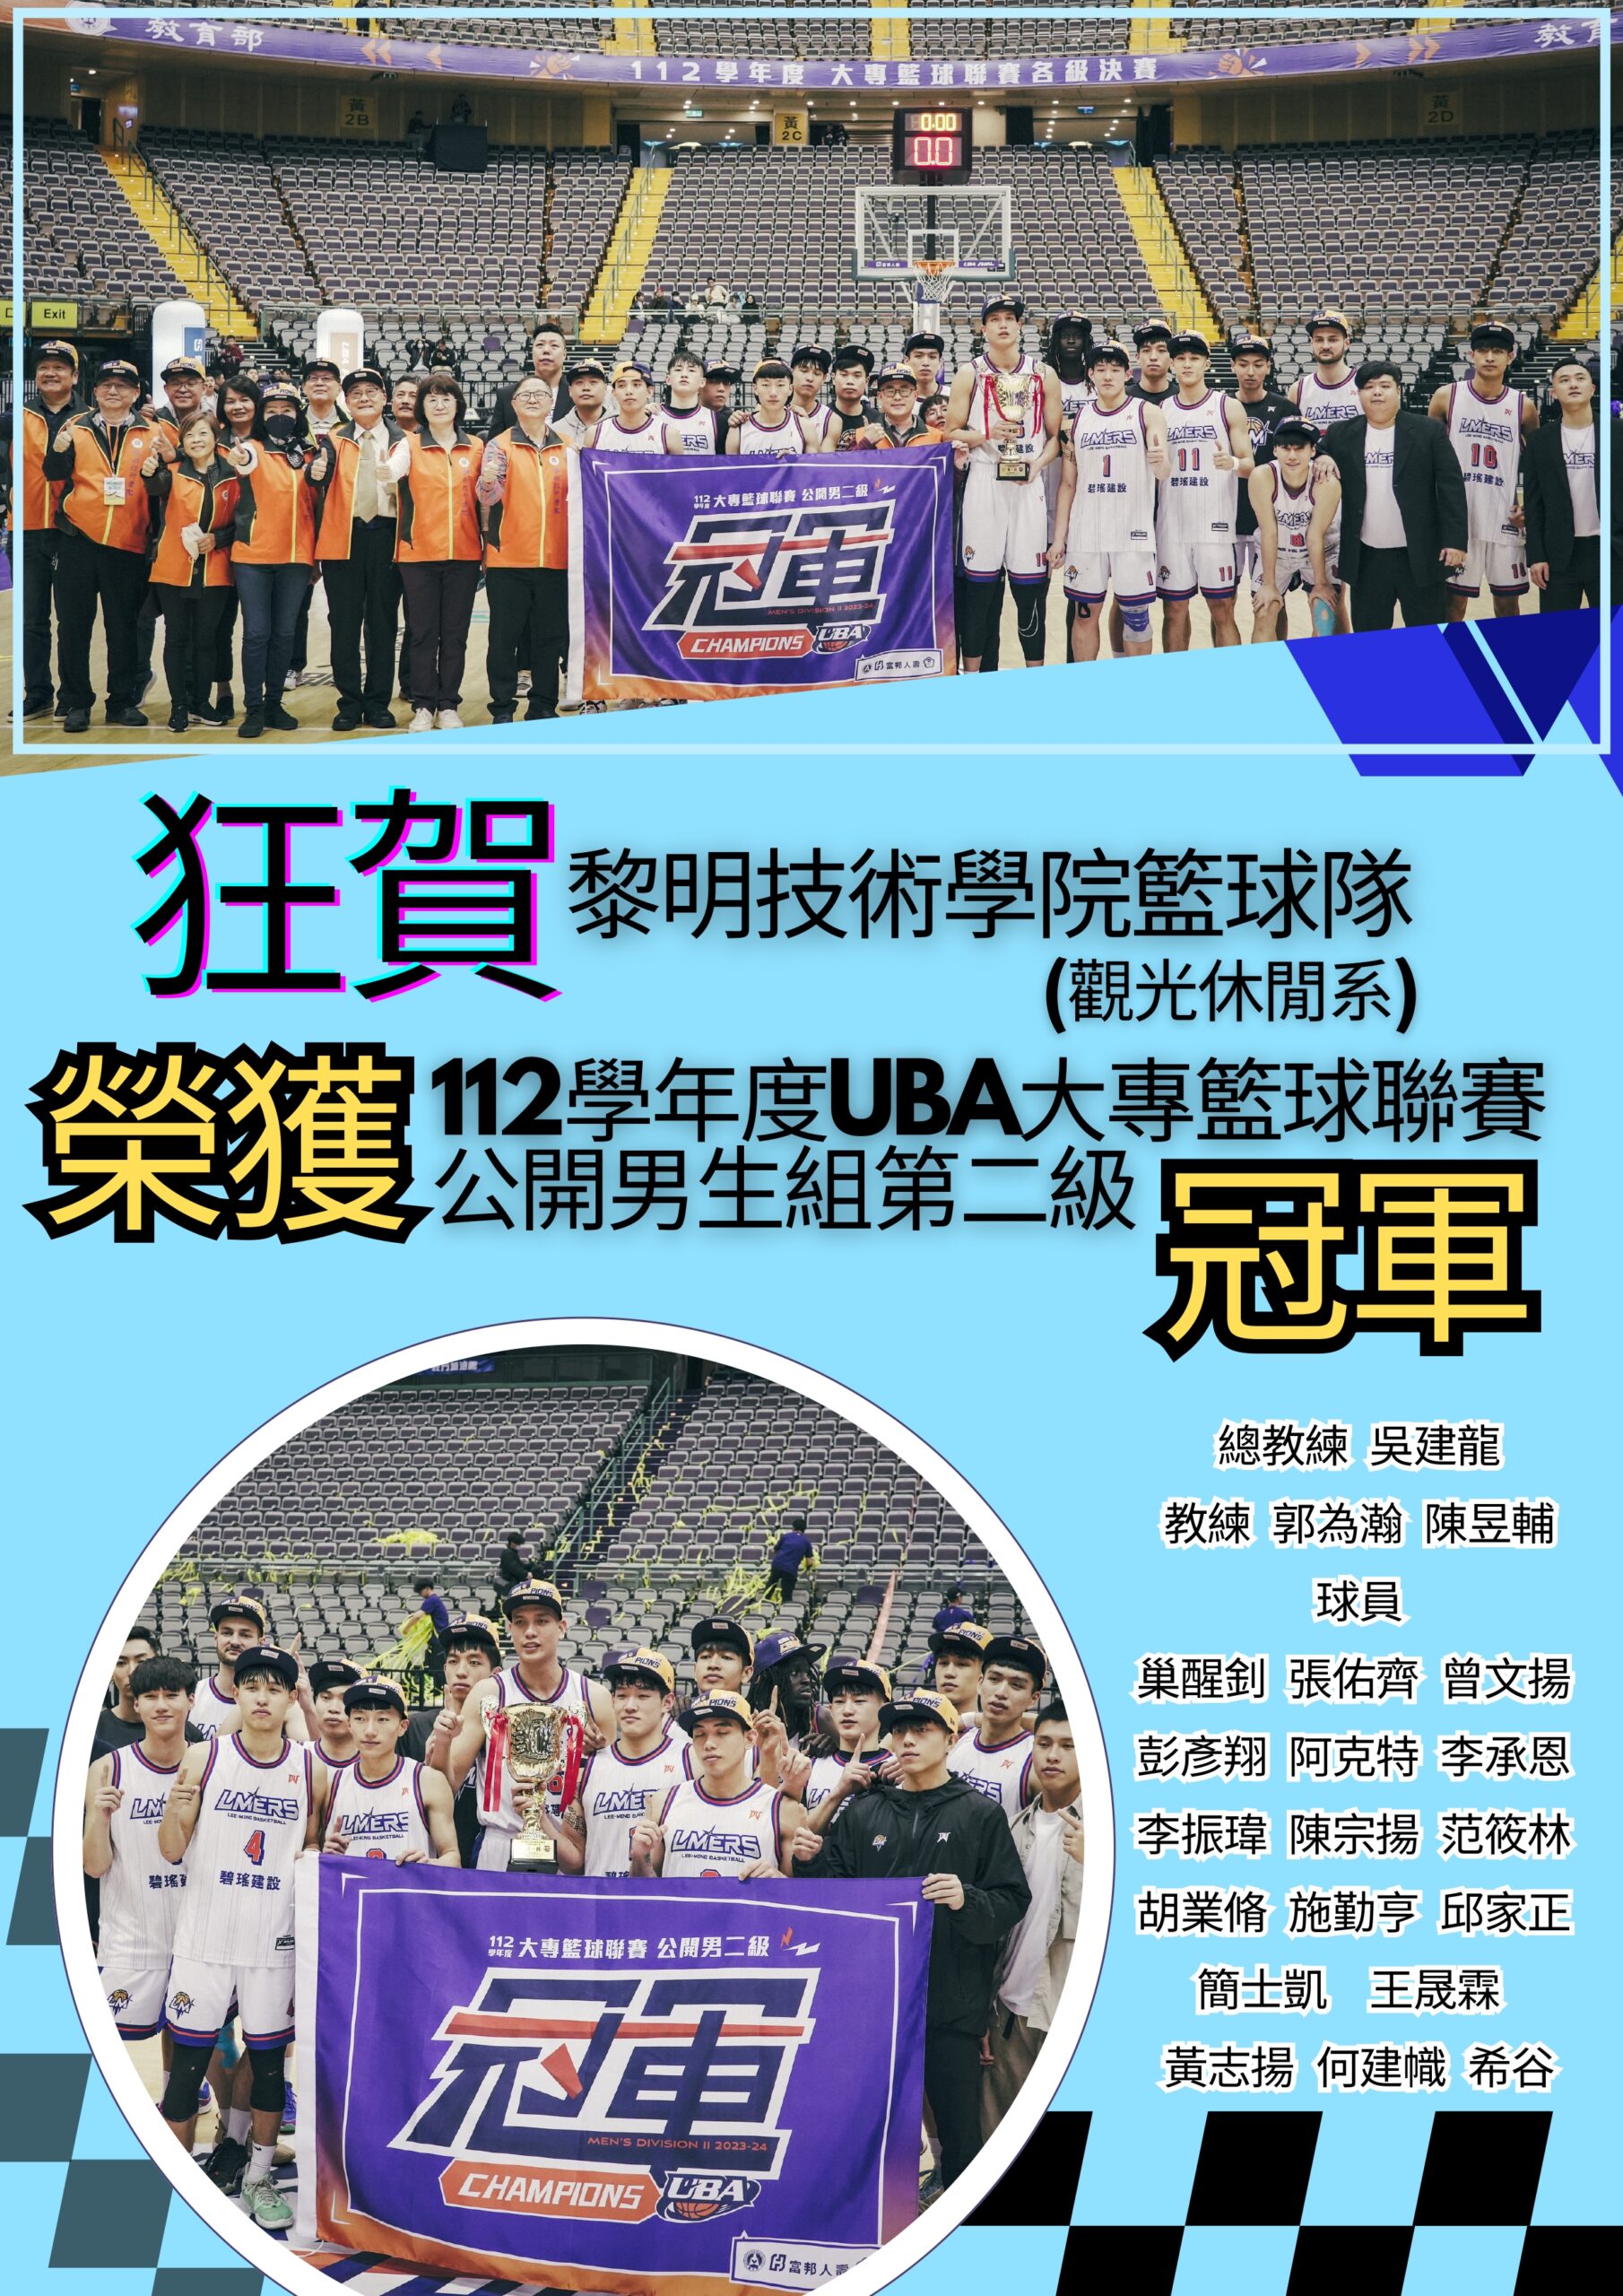 狂賀 UBA大專籃球聯賽公開男生組第二級 冠軍_Fin._page-0001